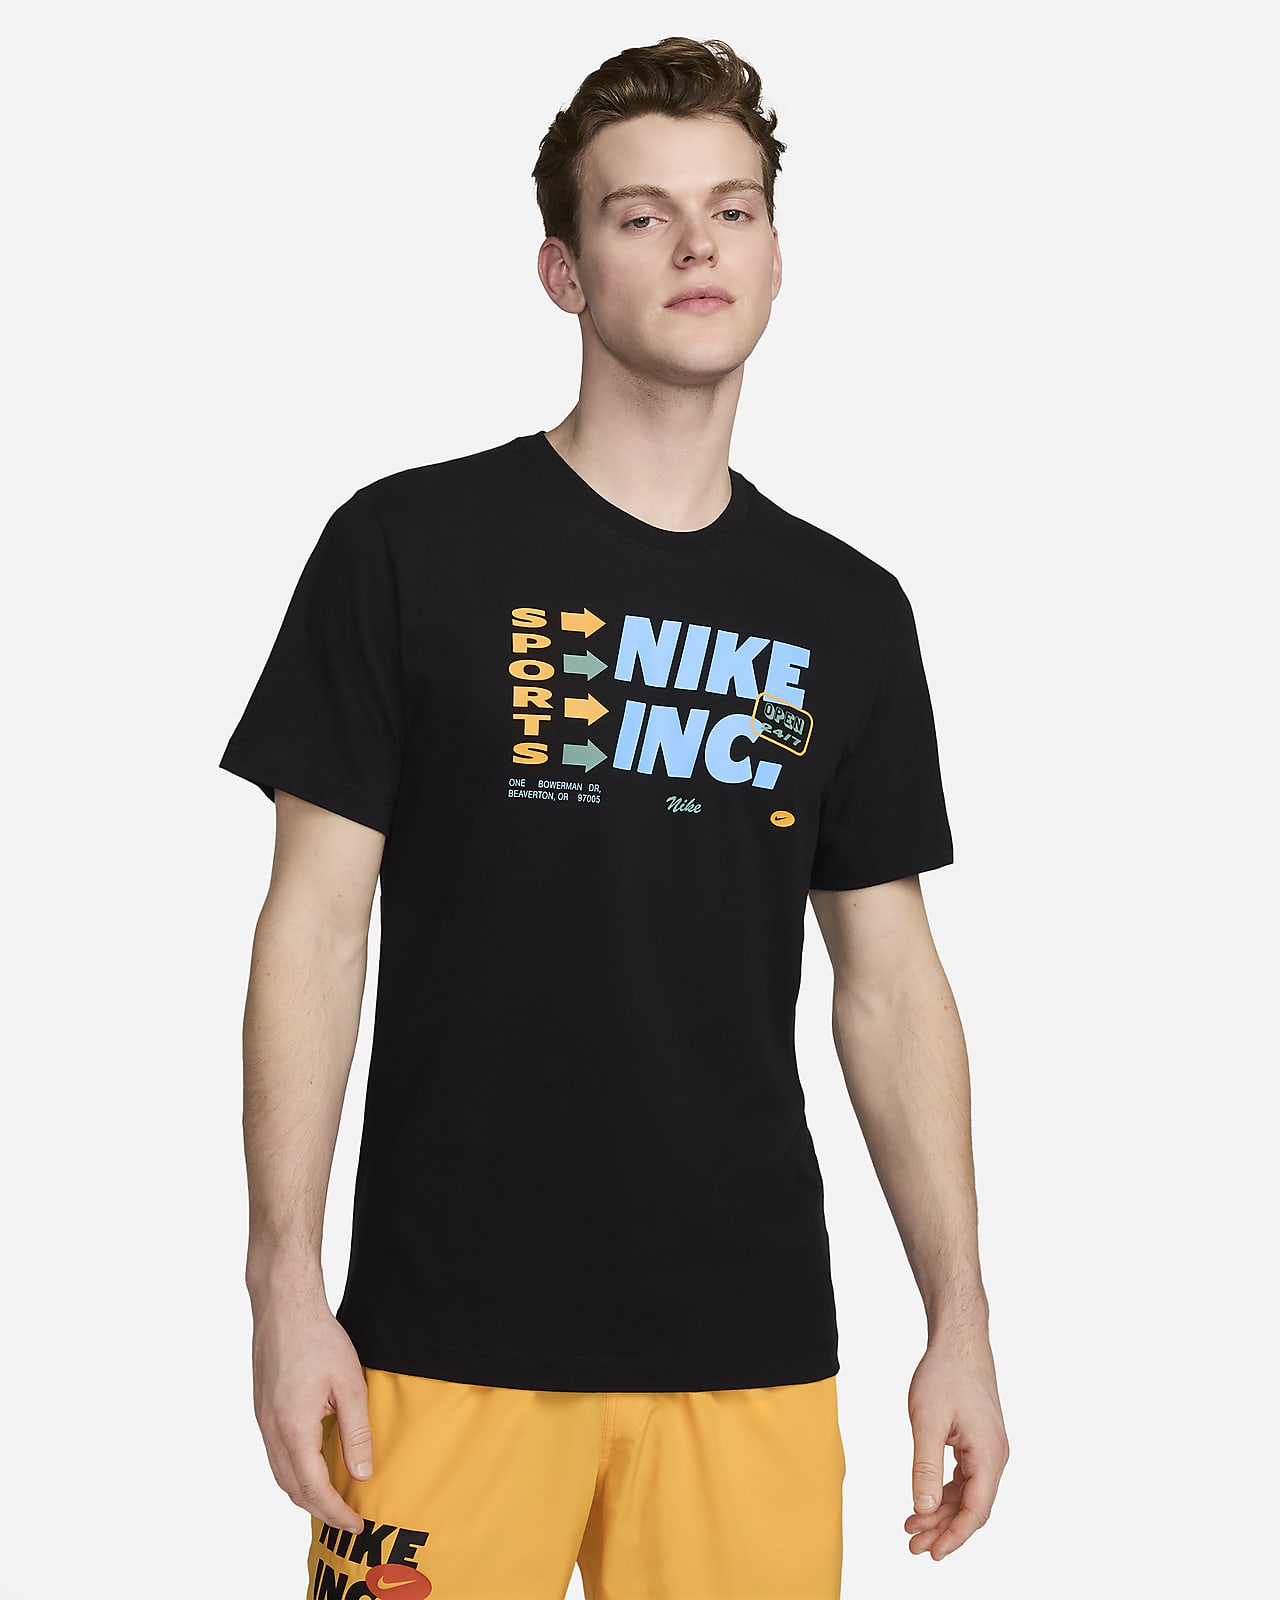 Nike Dri-FIT trenings-T-skjorte til herre